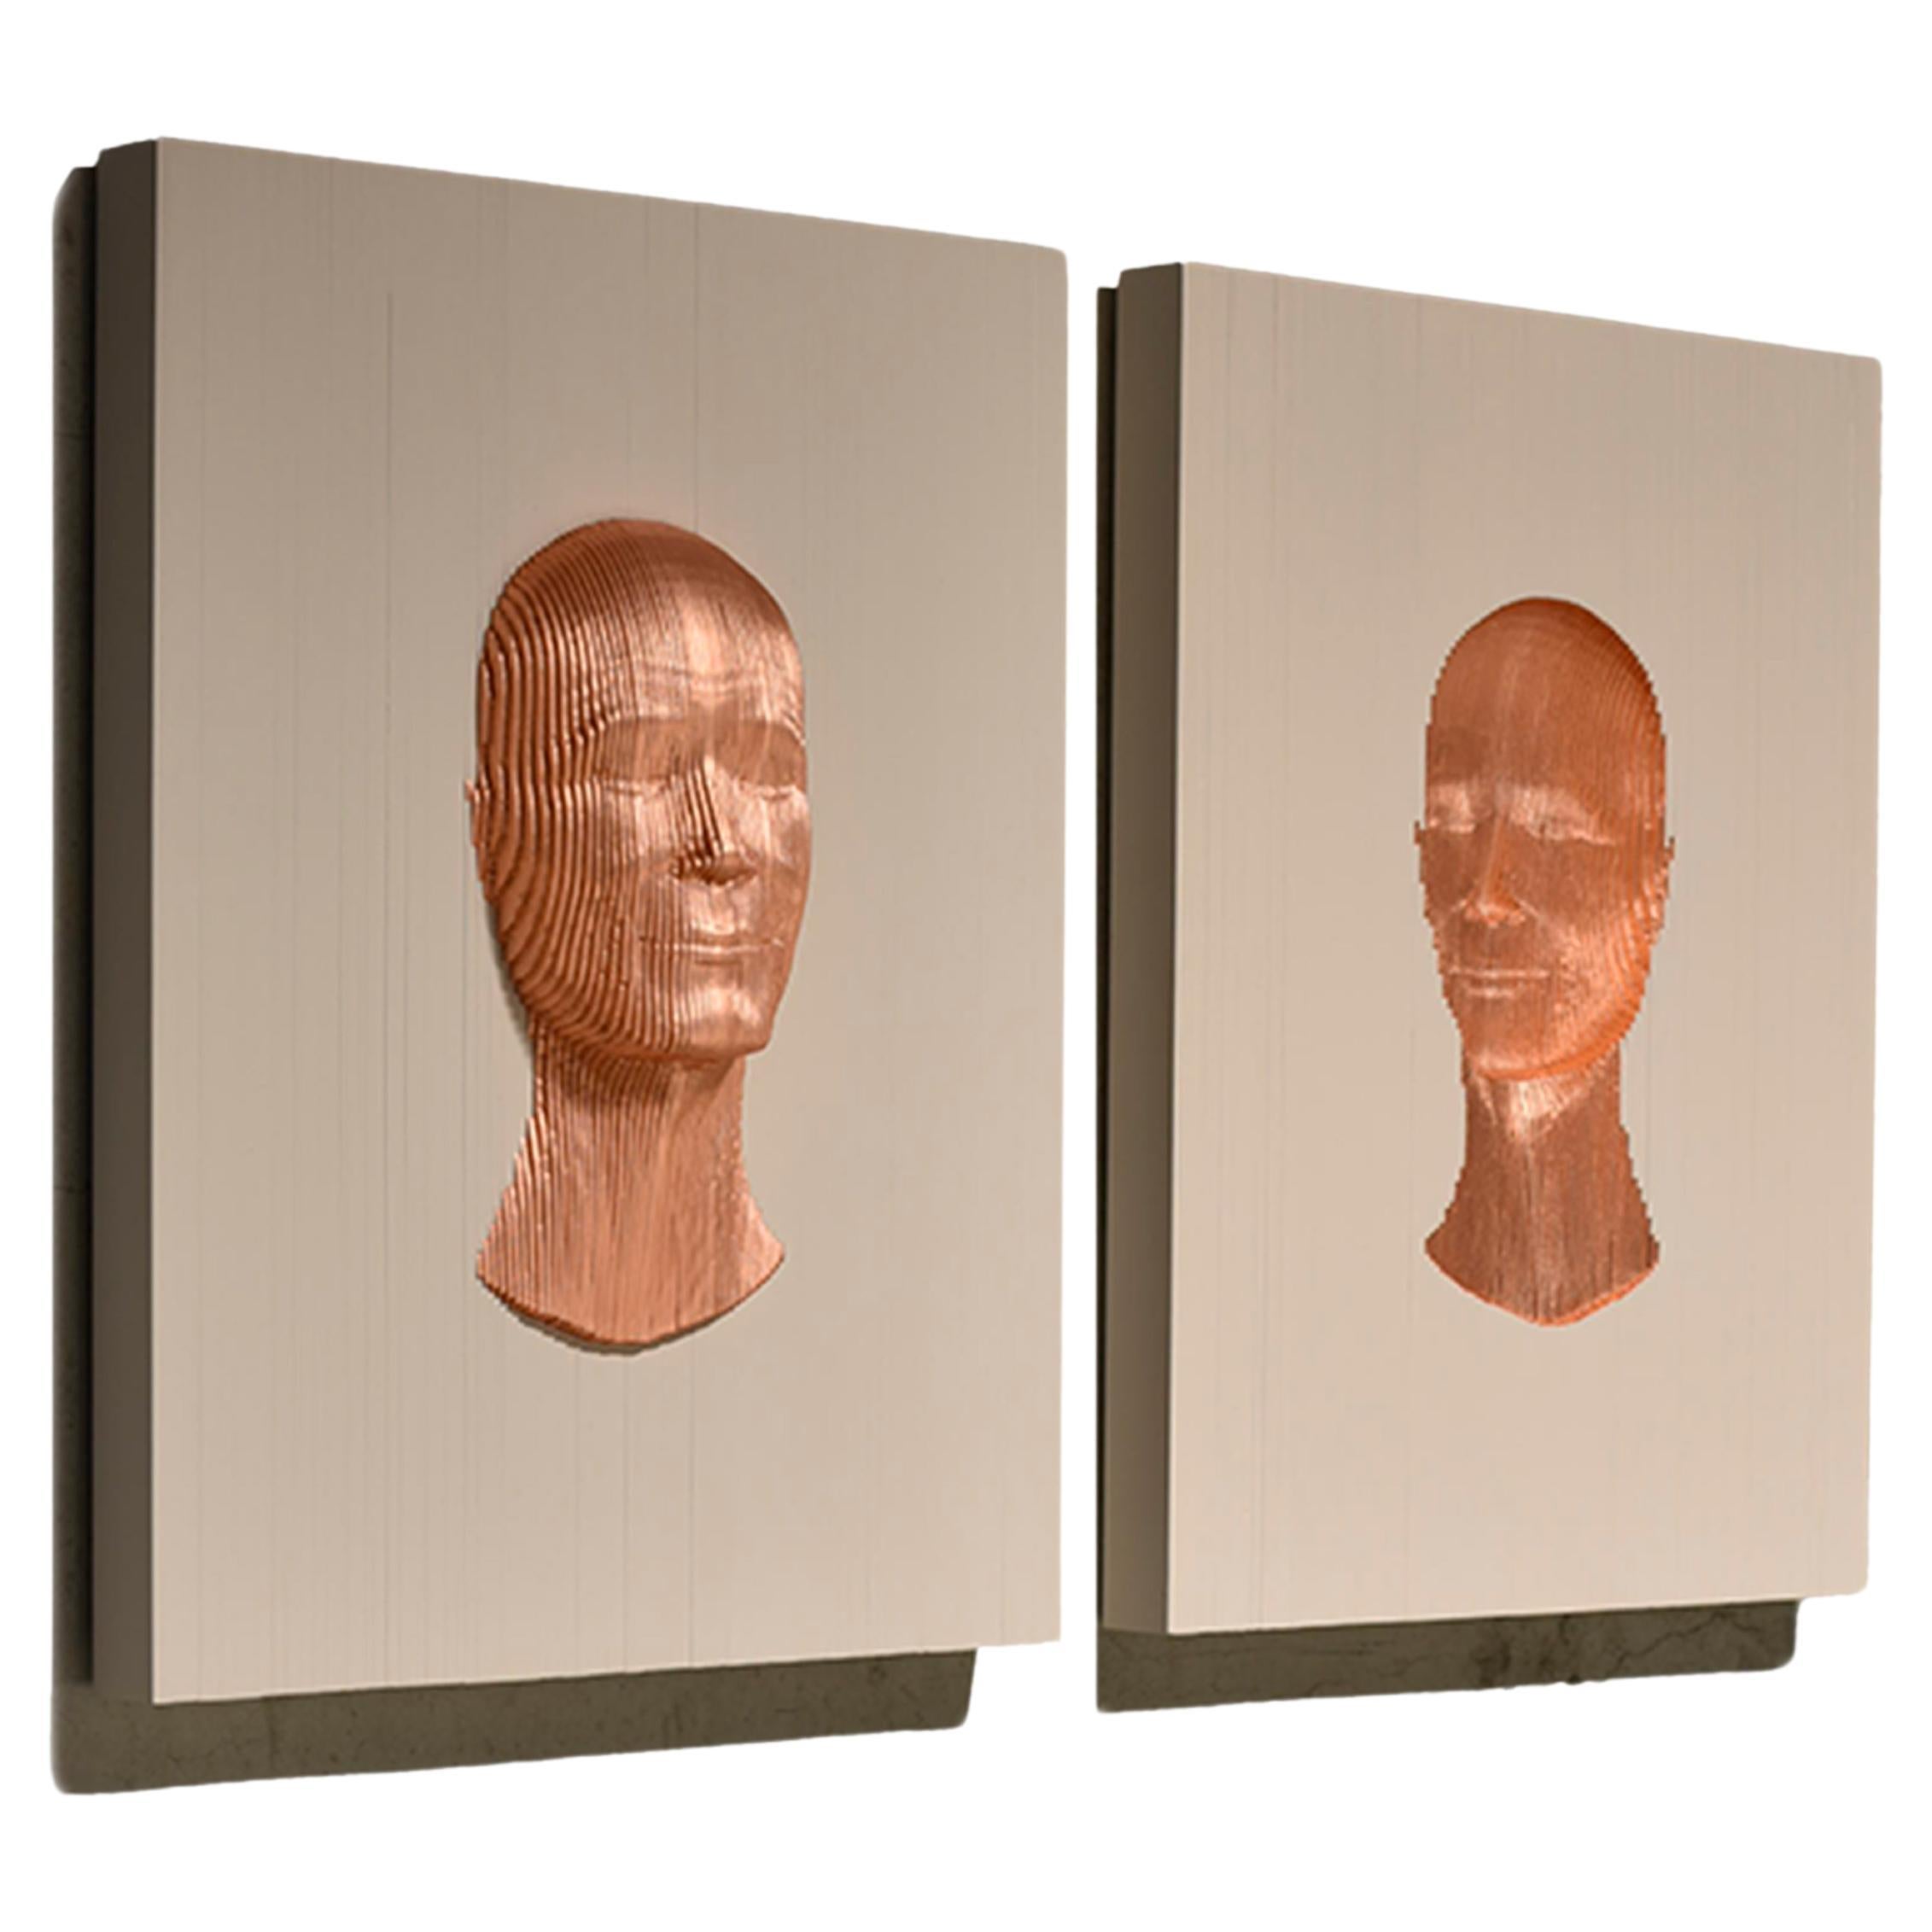 Inner Face - Outer Face Bronze von Piegatto, eine Contemporary Wandskulptur